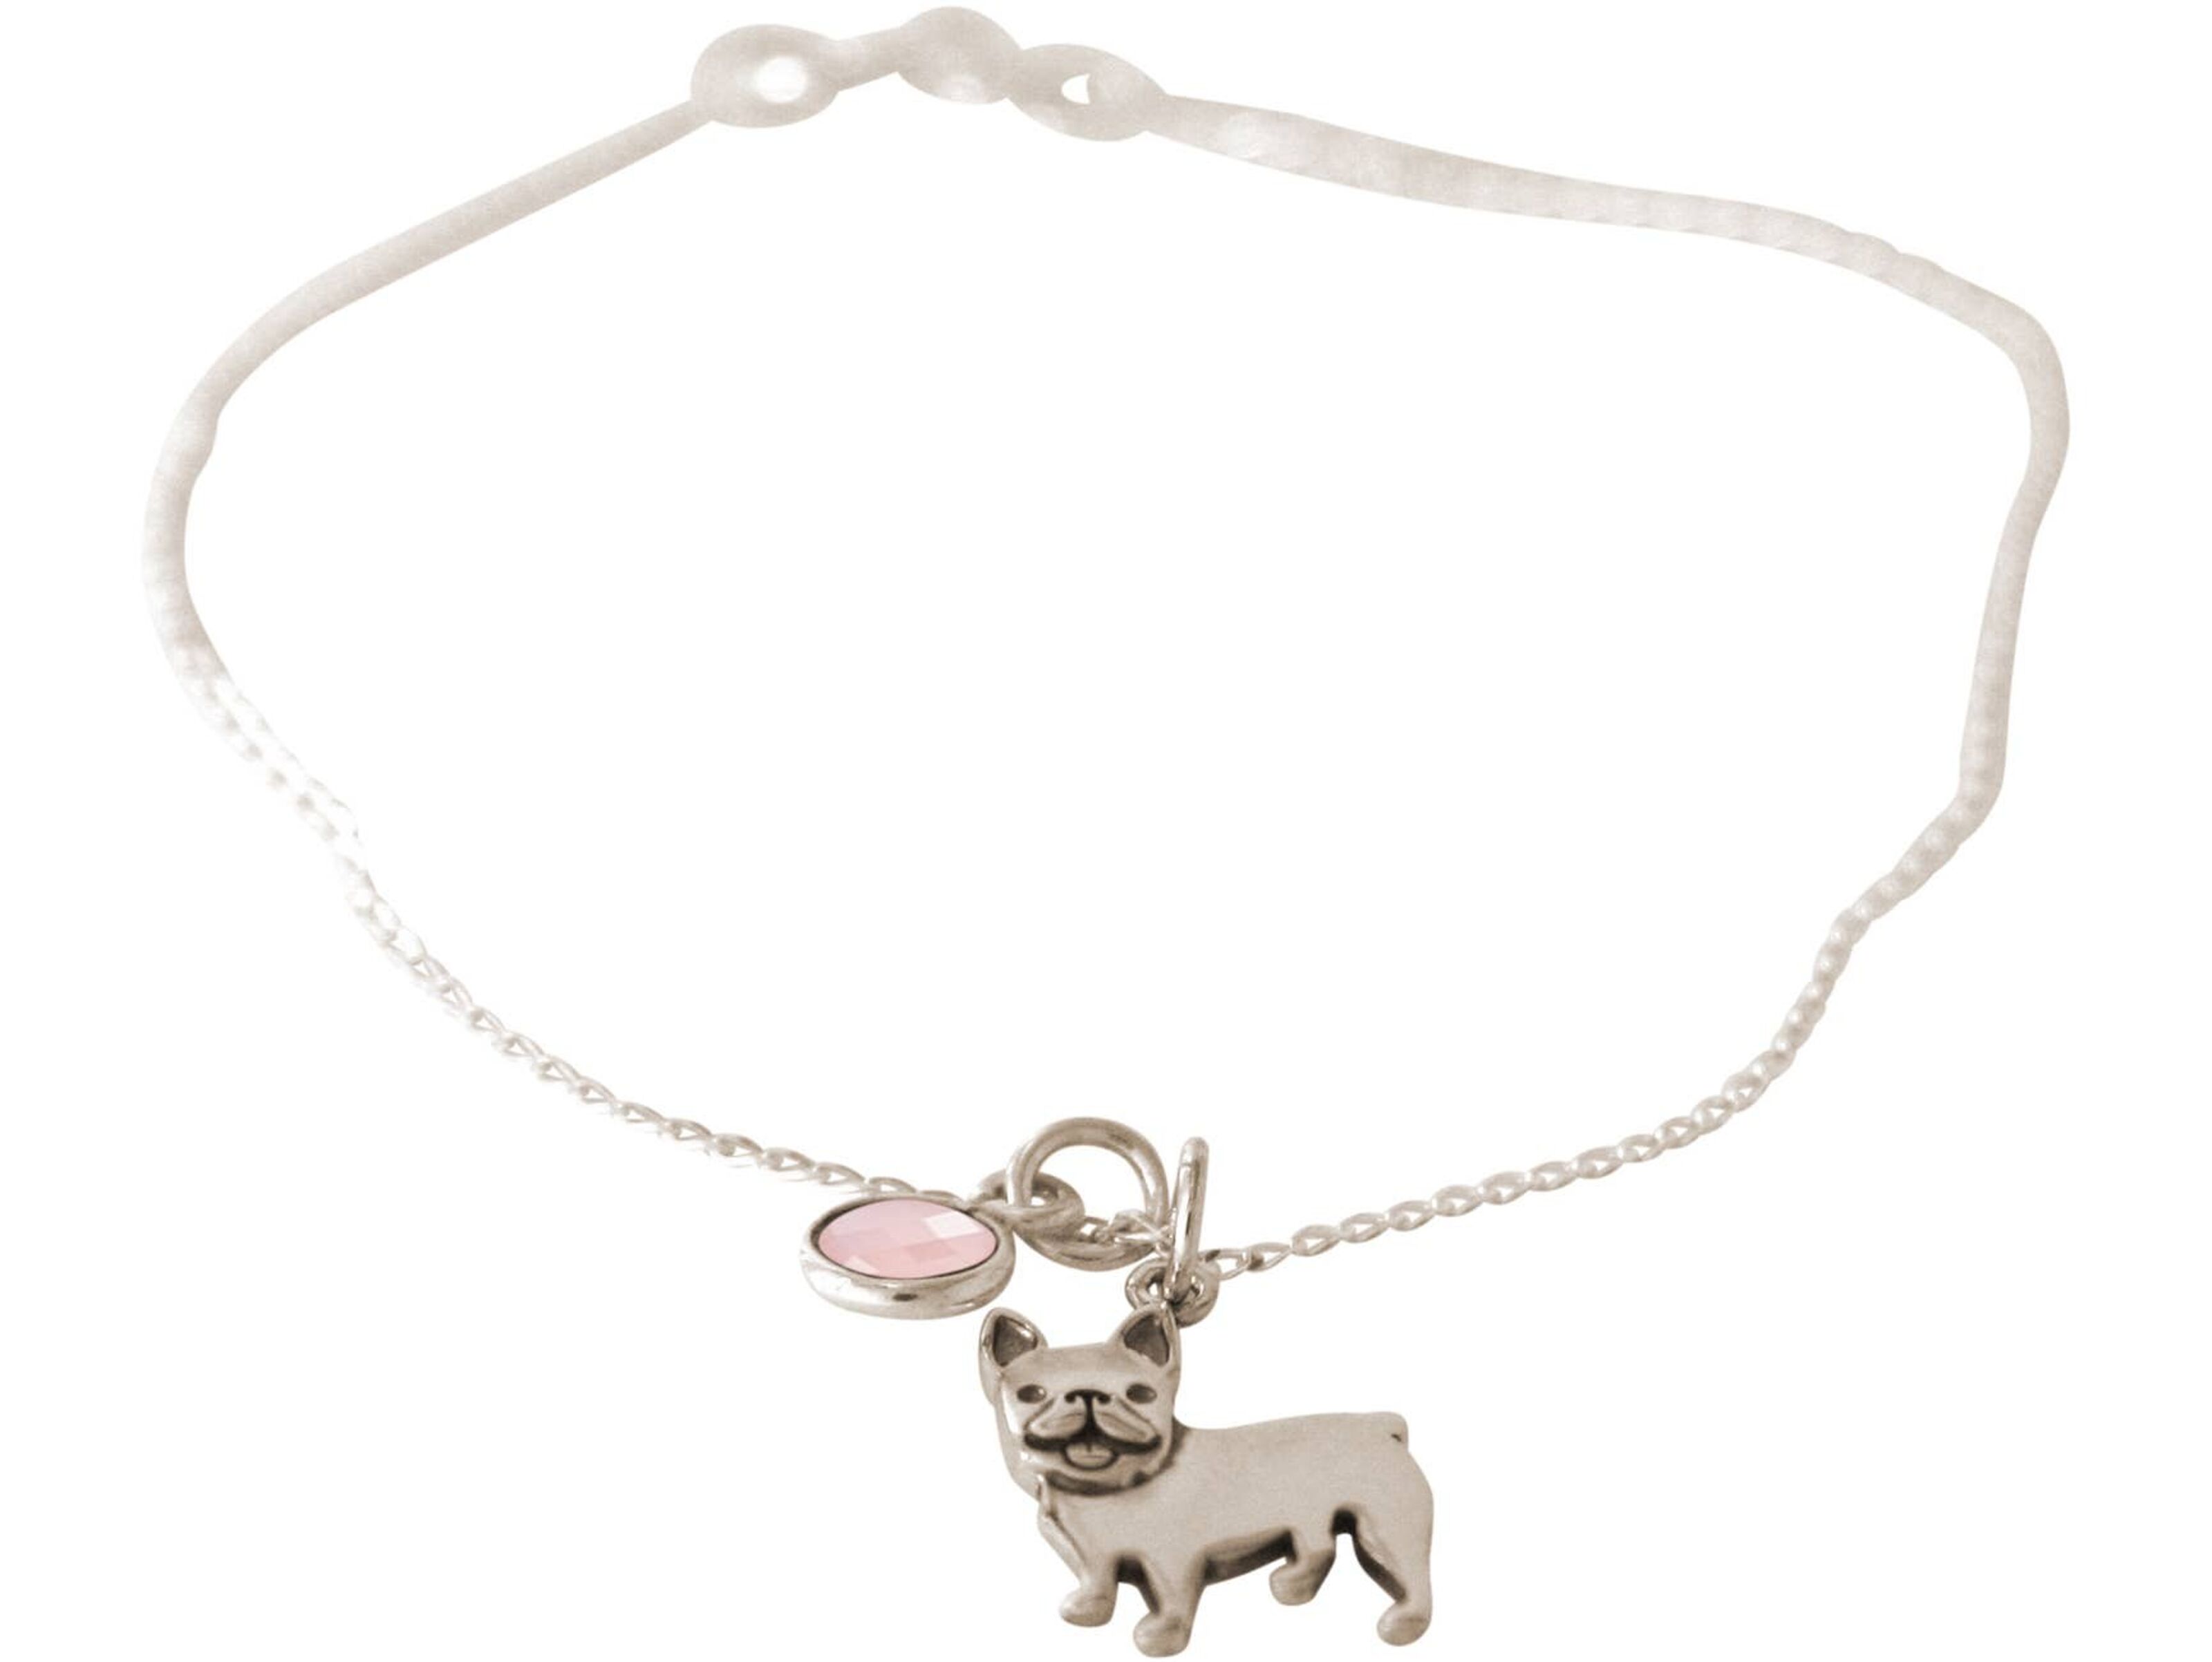 Gemshine Halskette Französische Bulldogge Hund Anhänger. 925